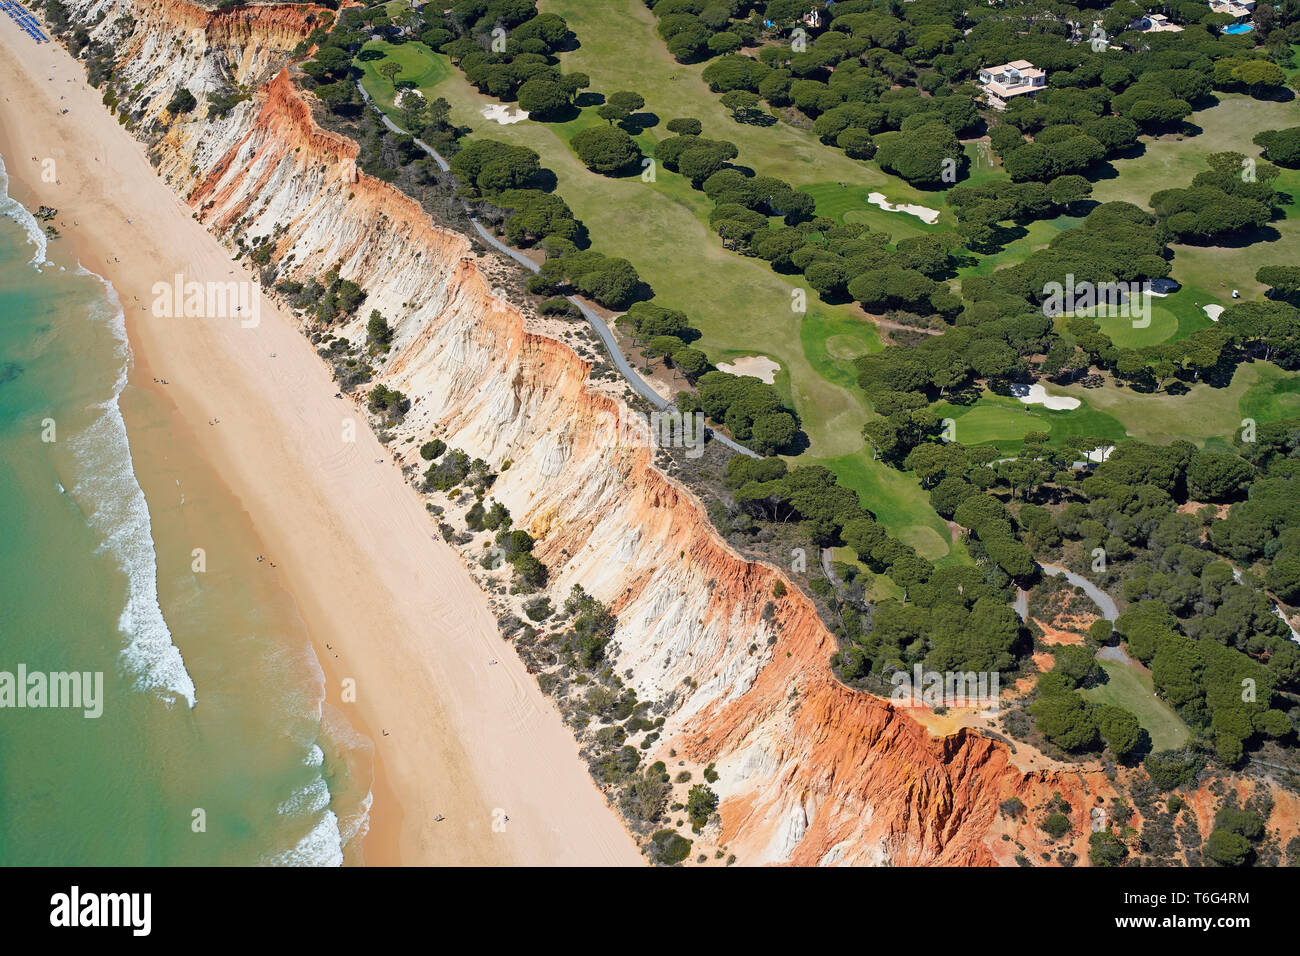 VUE AÉRIENNE. Parcours de golf Pine Cliffs donnant sur la plage pittoresque de Praia da Falésia, le long de la côte atlantique. Albufeira, Algarve, Portugal. Banque D'Images